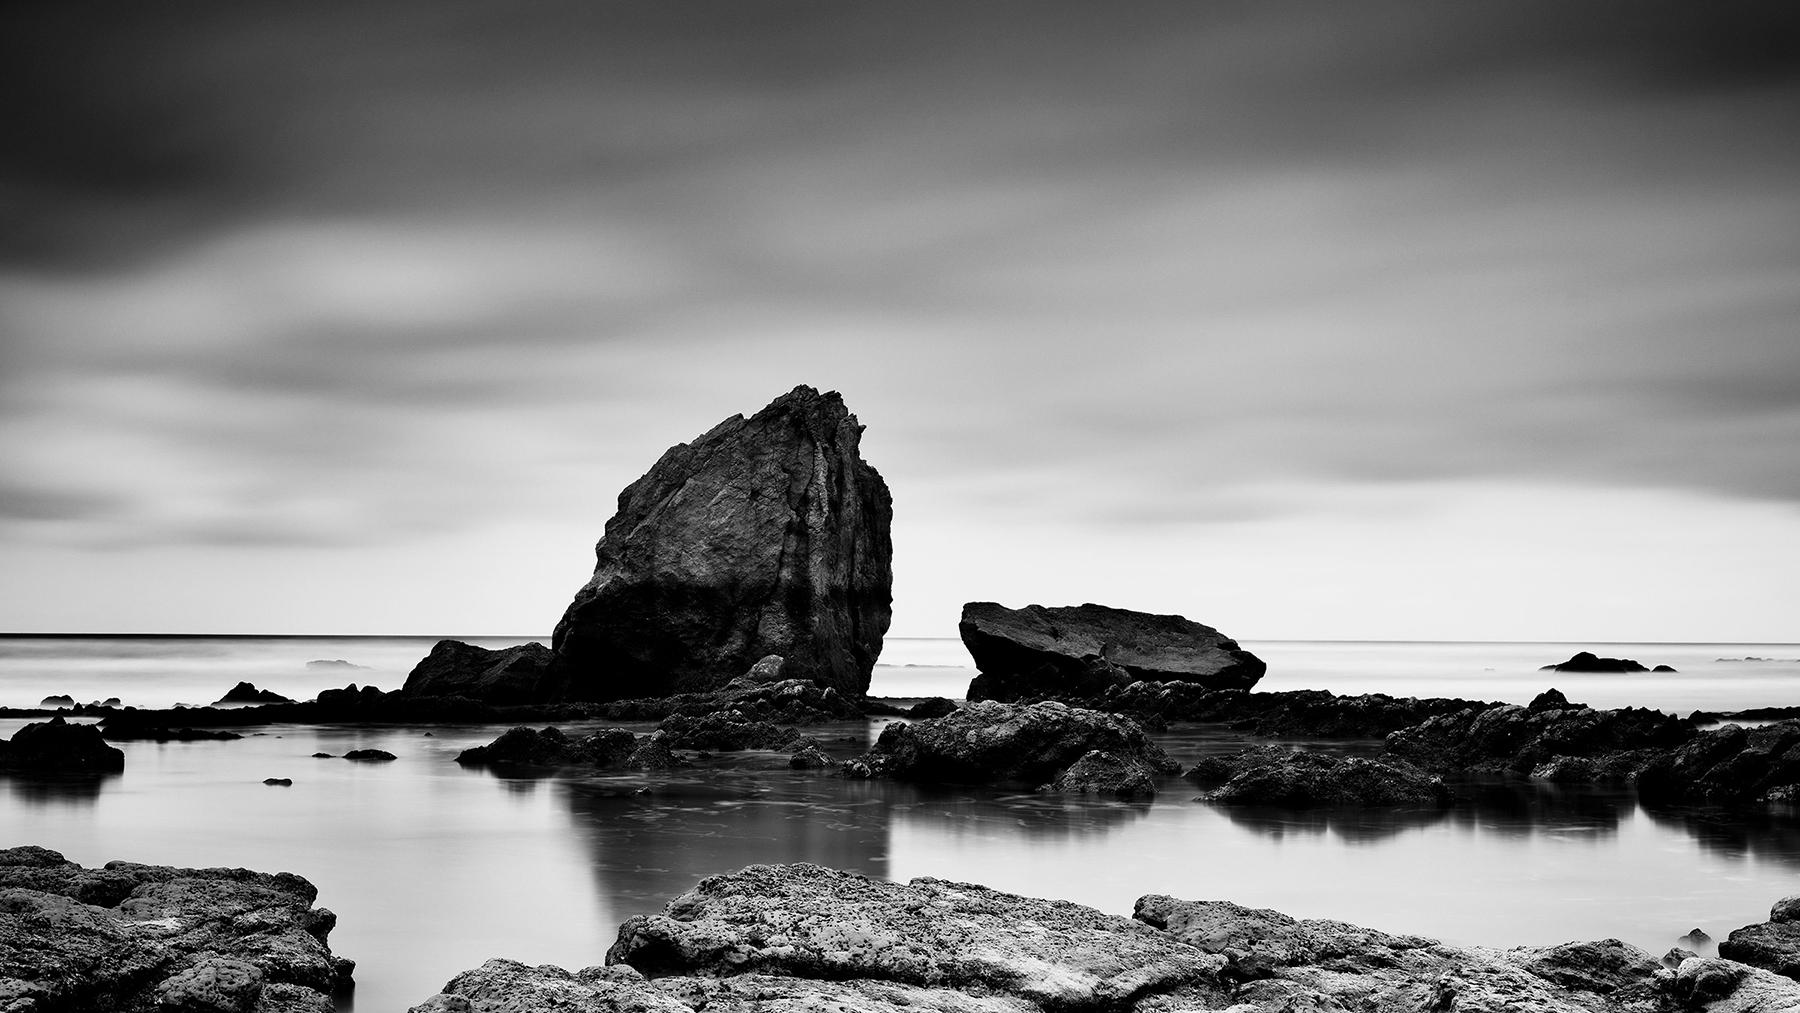 Black and White Photograph Gerald Berghammer - Panorama de rochers de plage, rivage, France, photographie de paysage en noir et blanc